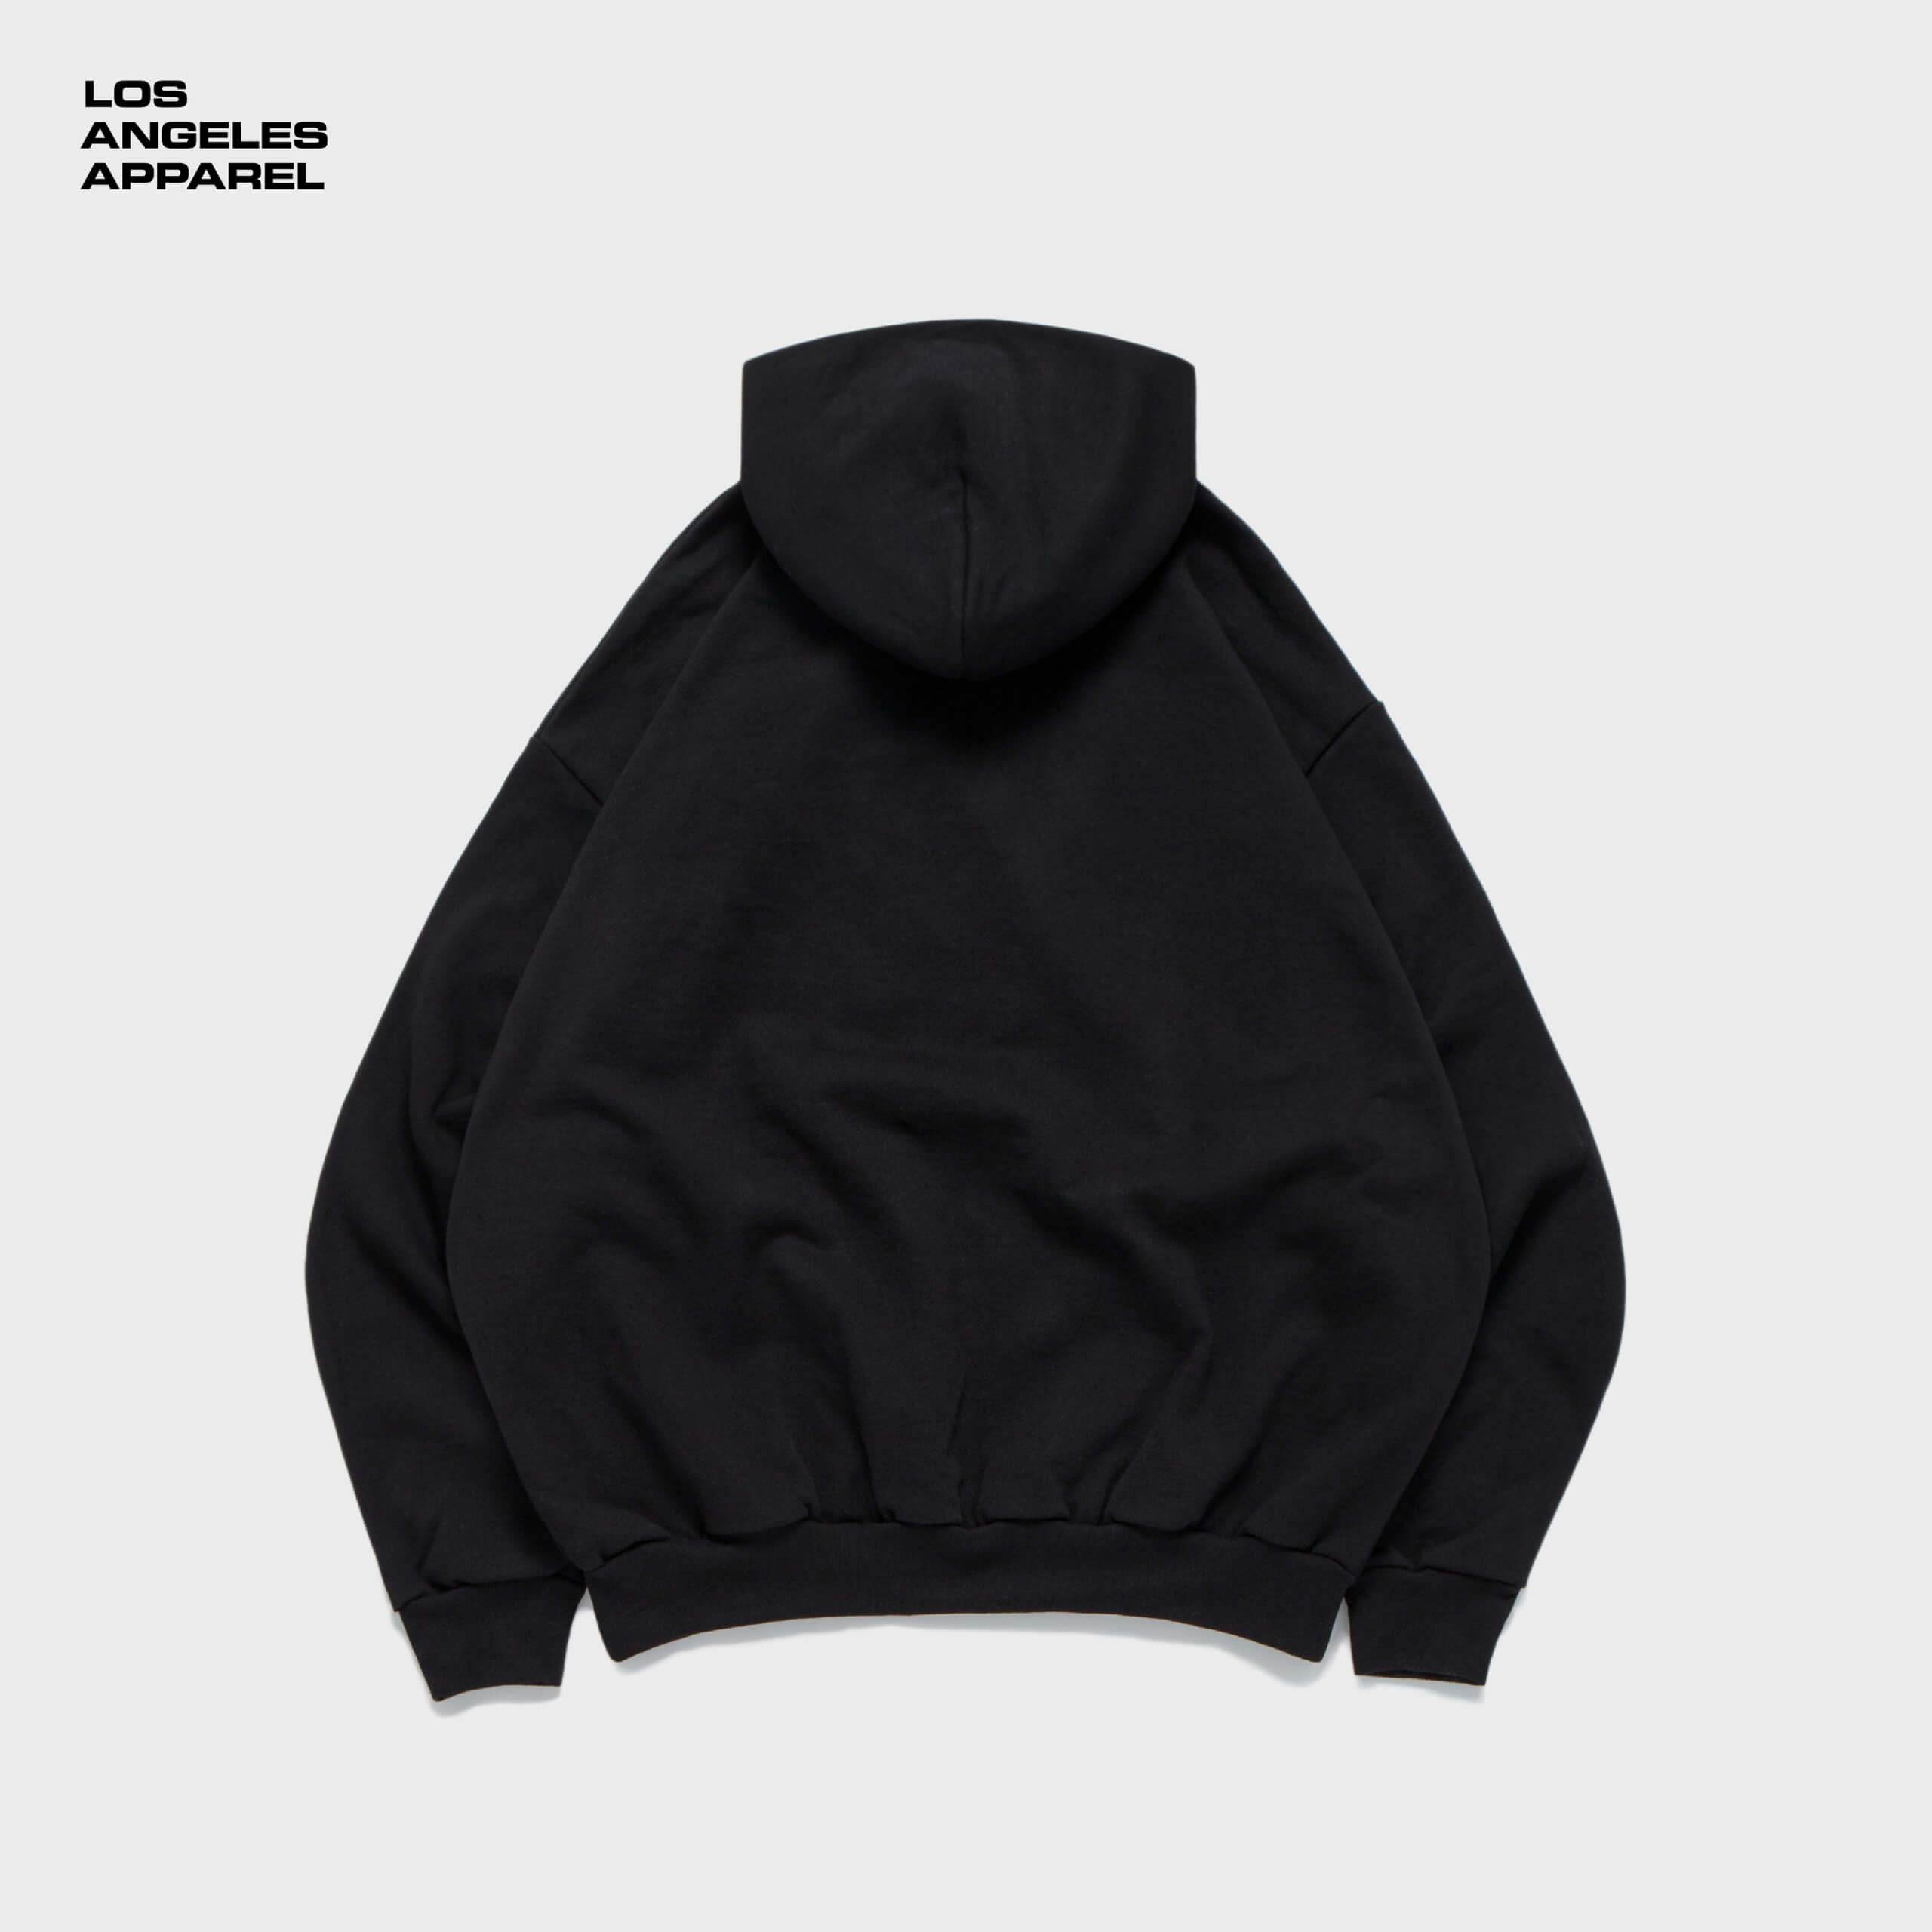 14oz-heavy-fleece-zip-up-hoodie-black_p1